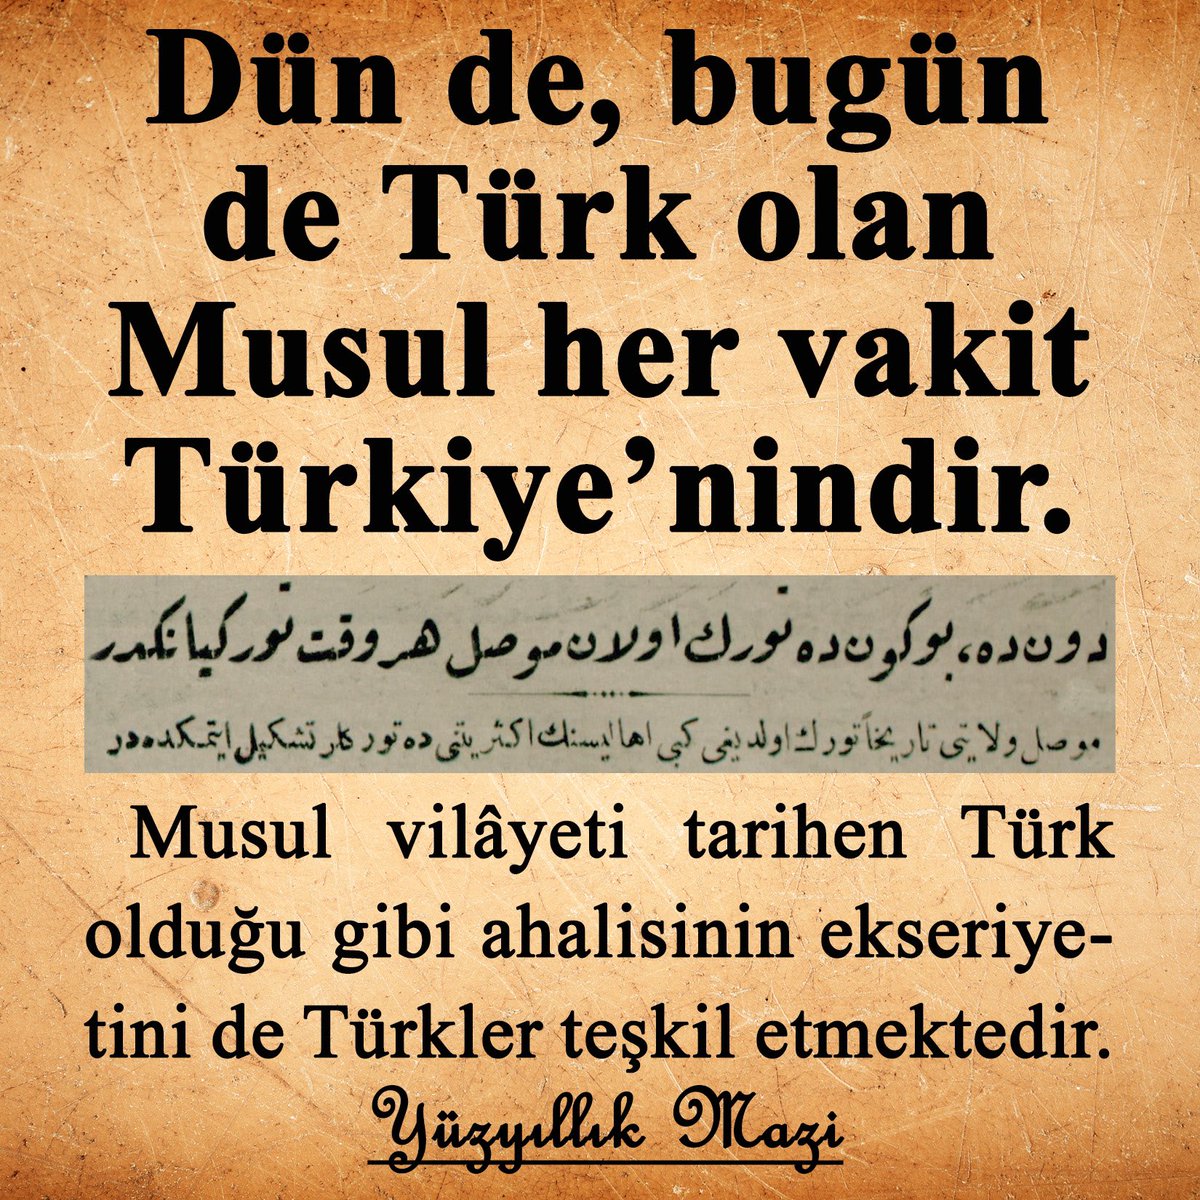 100 yıl önce (Mayıs 1924’te) Türkiye’nin Musul’a bakışı…

#yüzyıllıkmazi #osmanlıca #musul #türk #türkmilleti #türkler #ırak #tarihtebugün #tarih